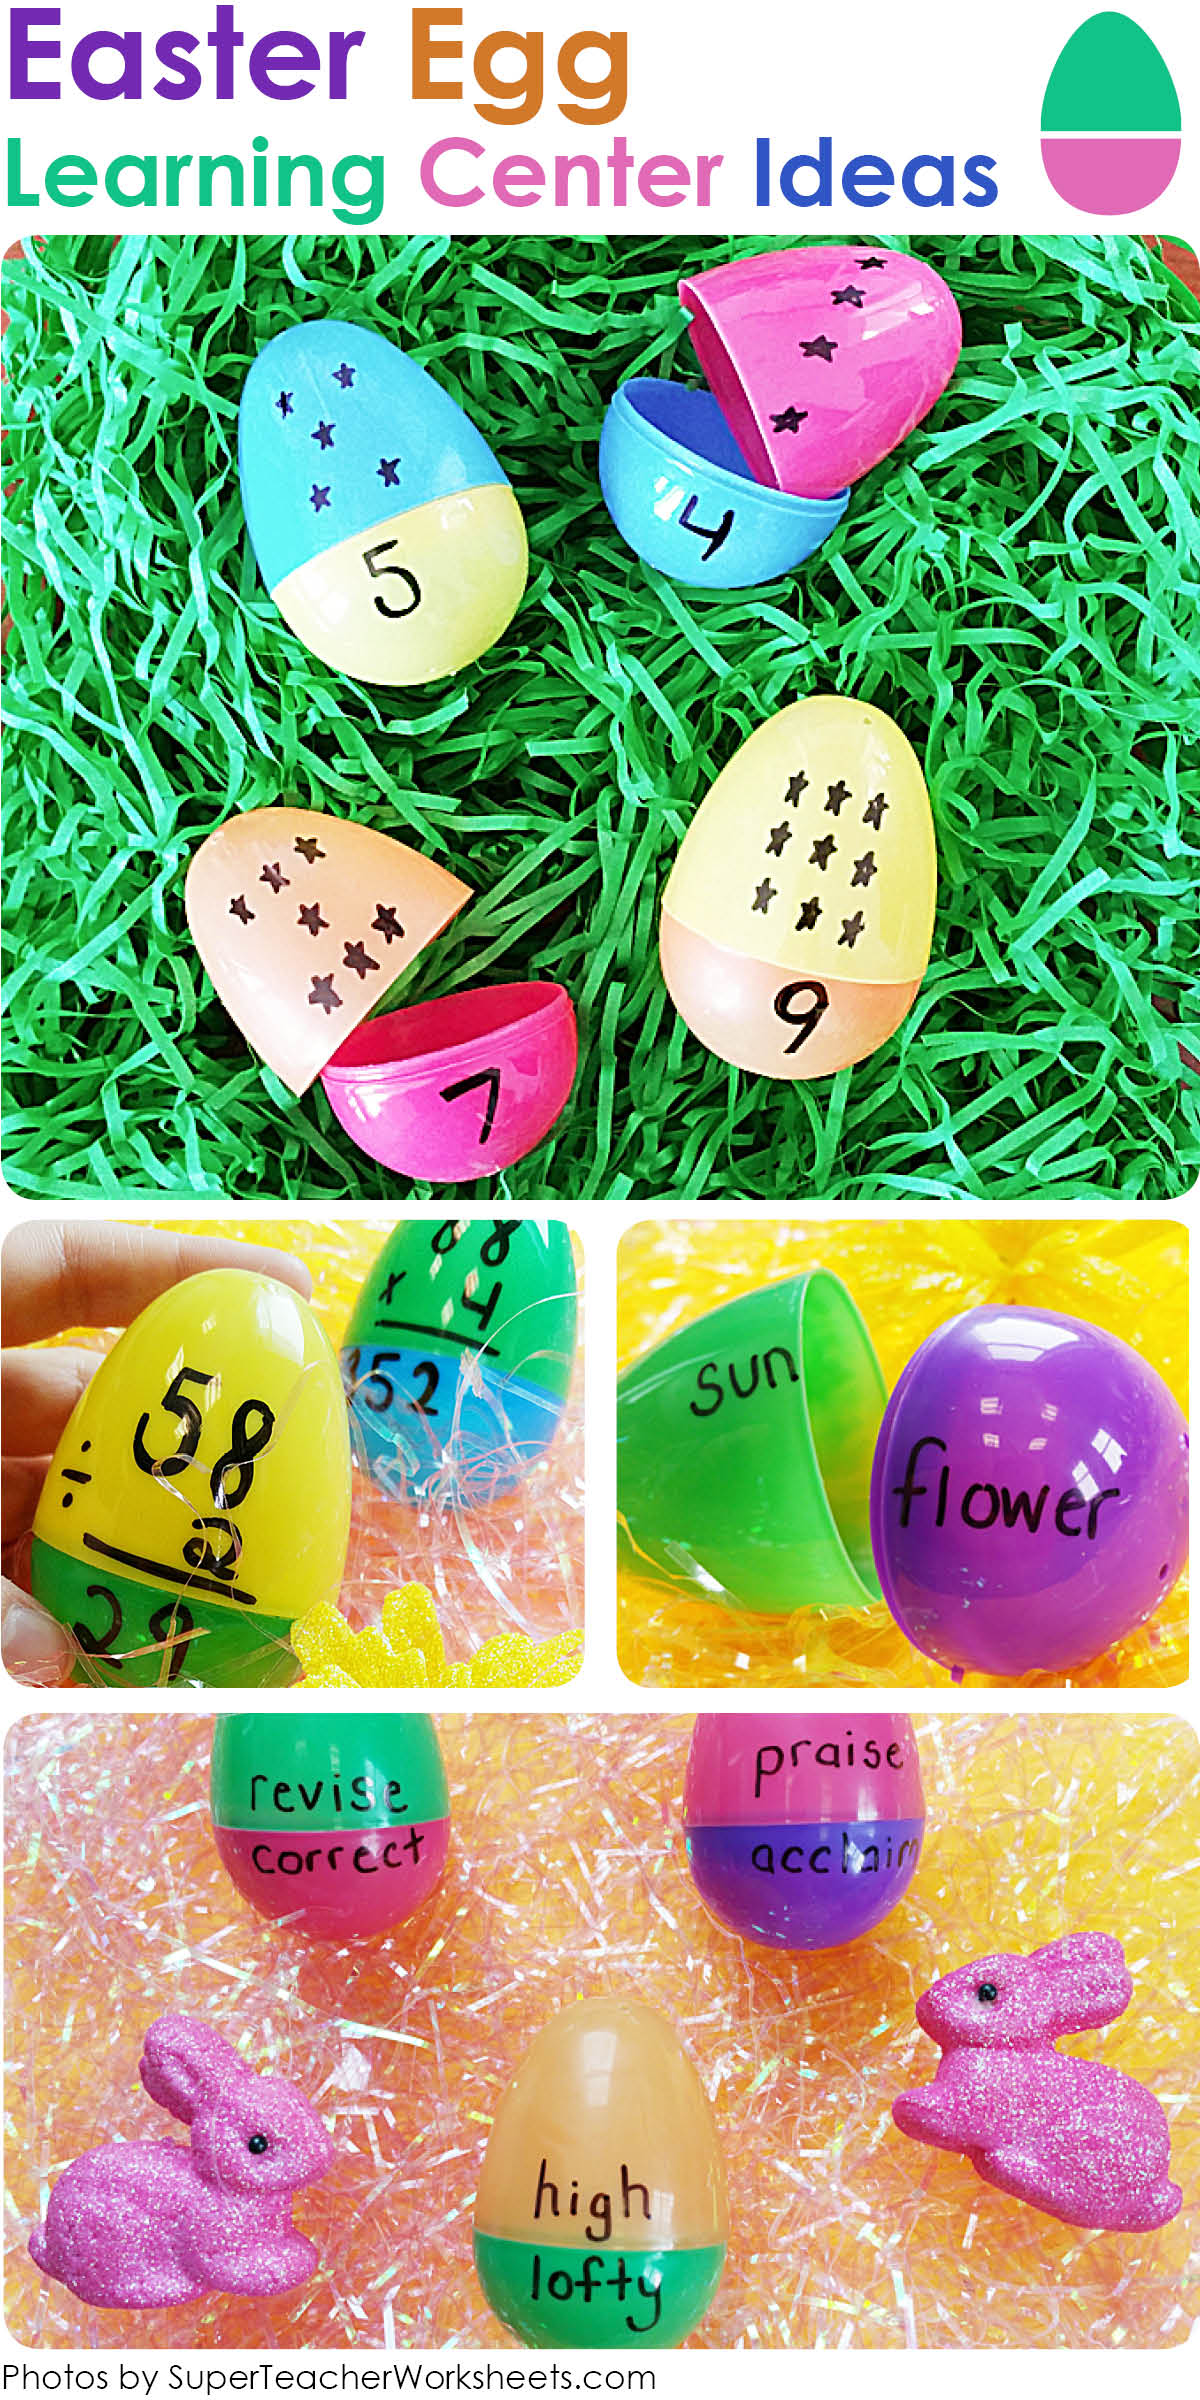 Learning Center Ideas: Plastic Easter Eggs